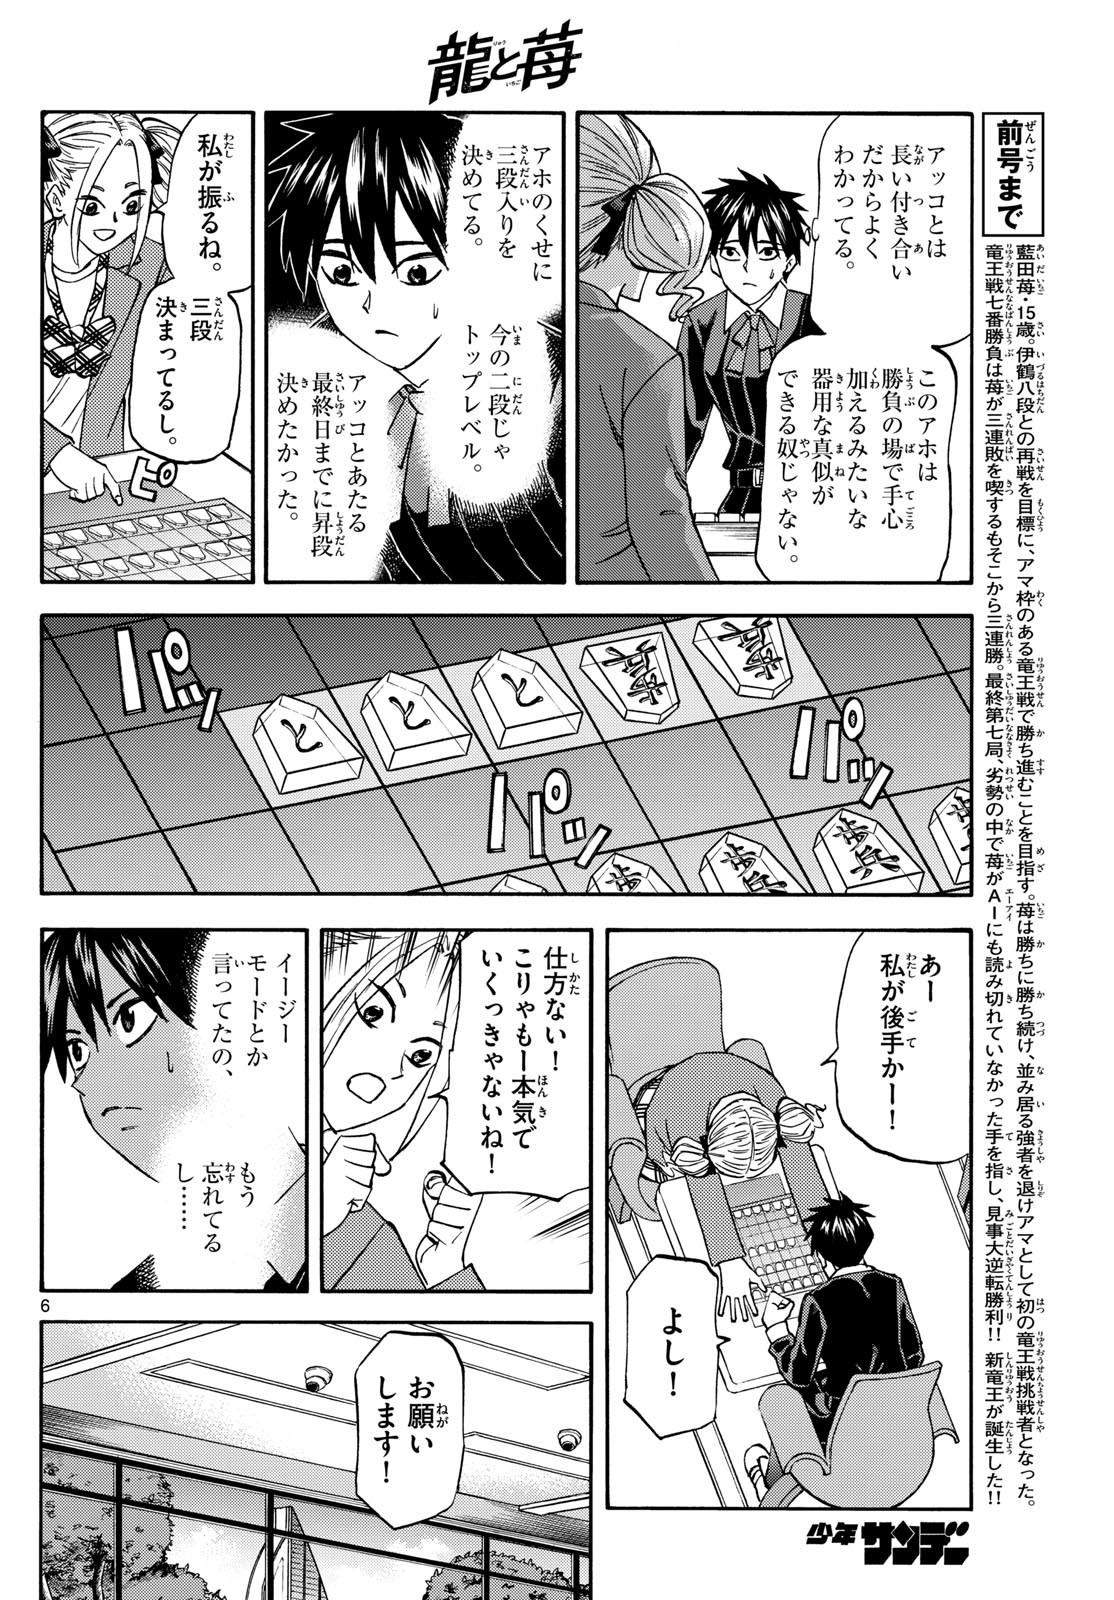 Ryu-to-Ichigo - Chapter 181 - Page 6